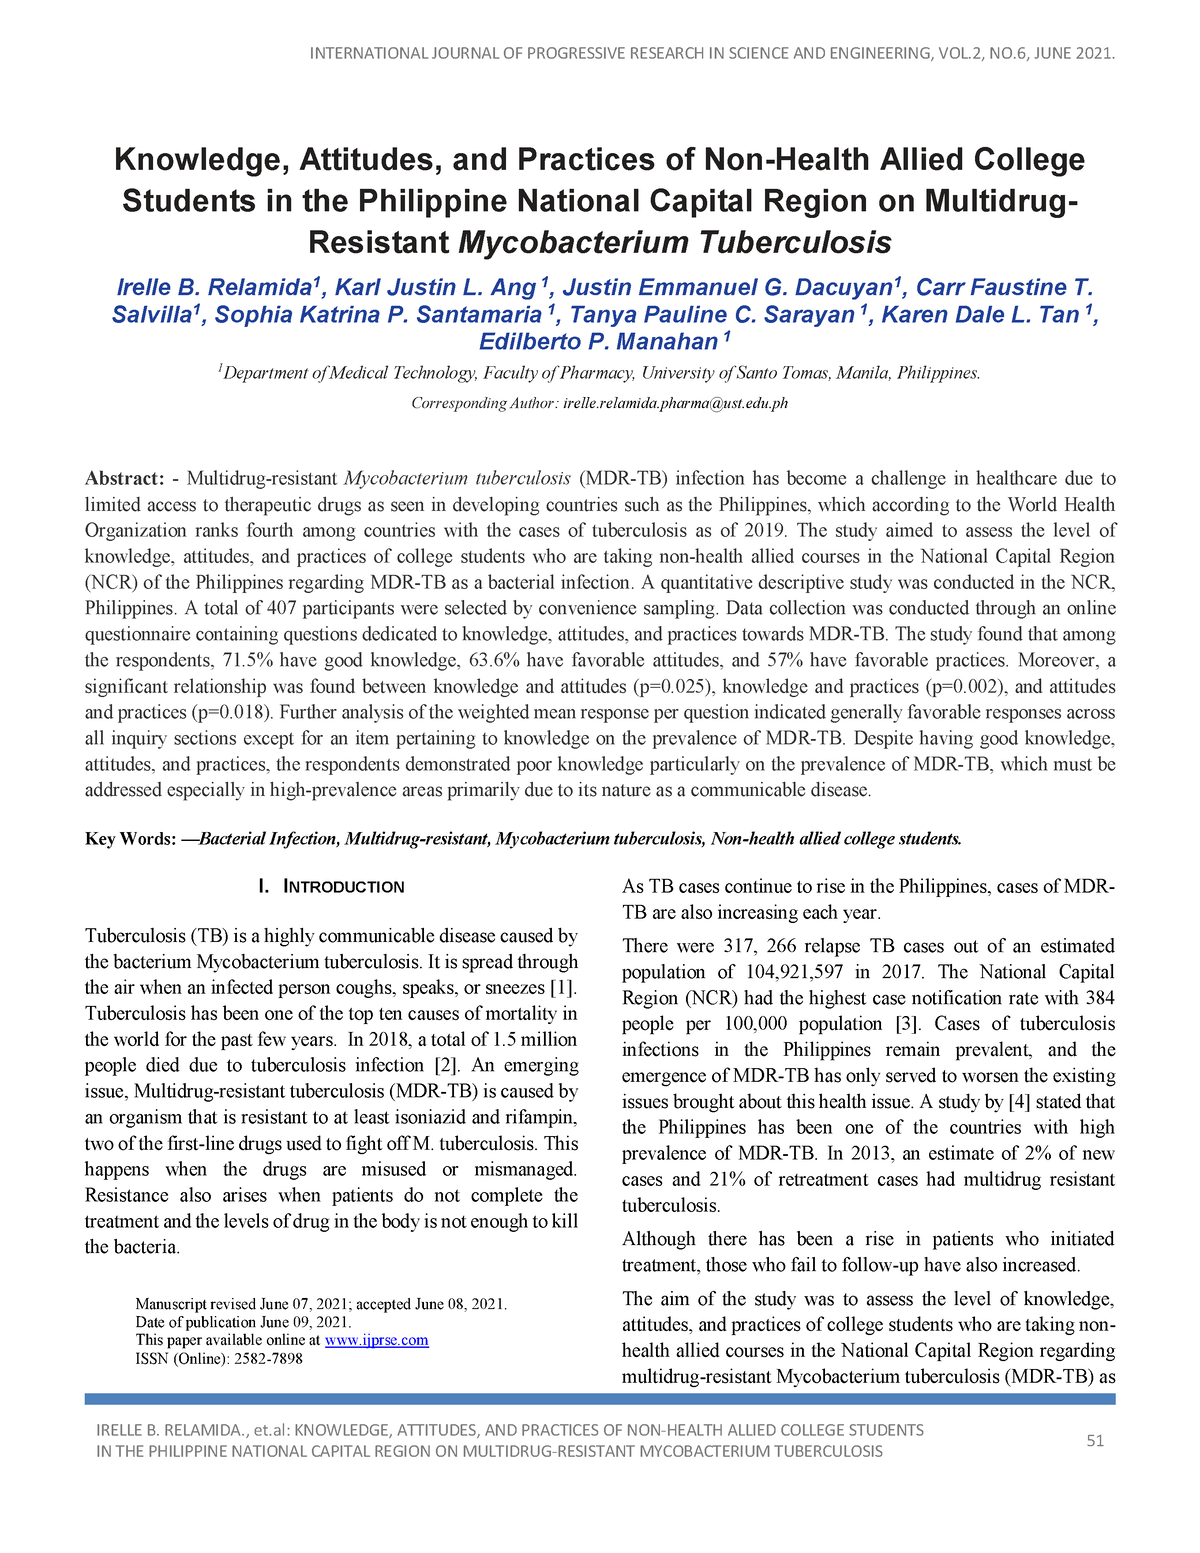 mycobacterium tuberculosis research paper